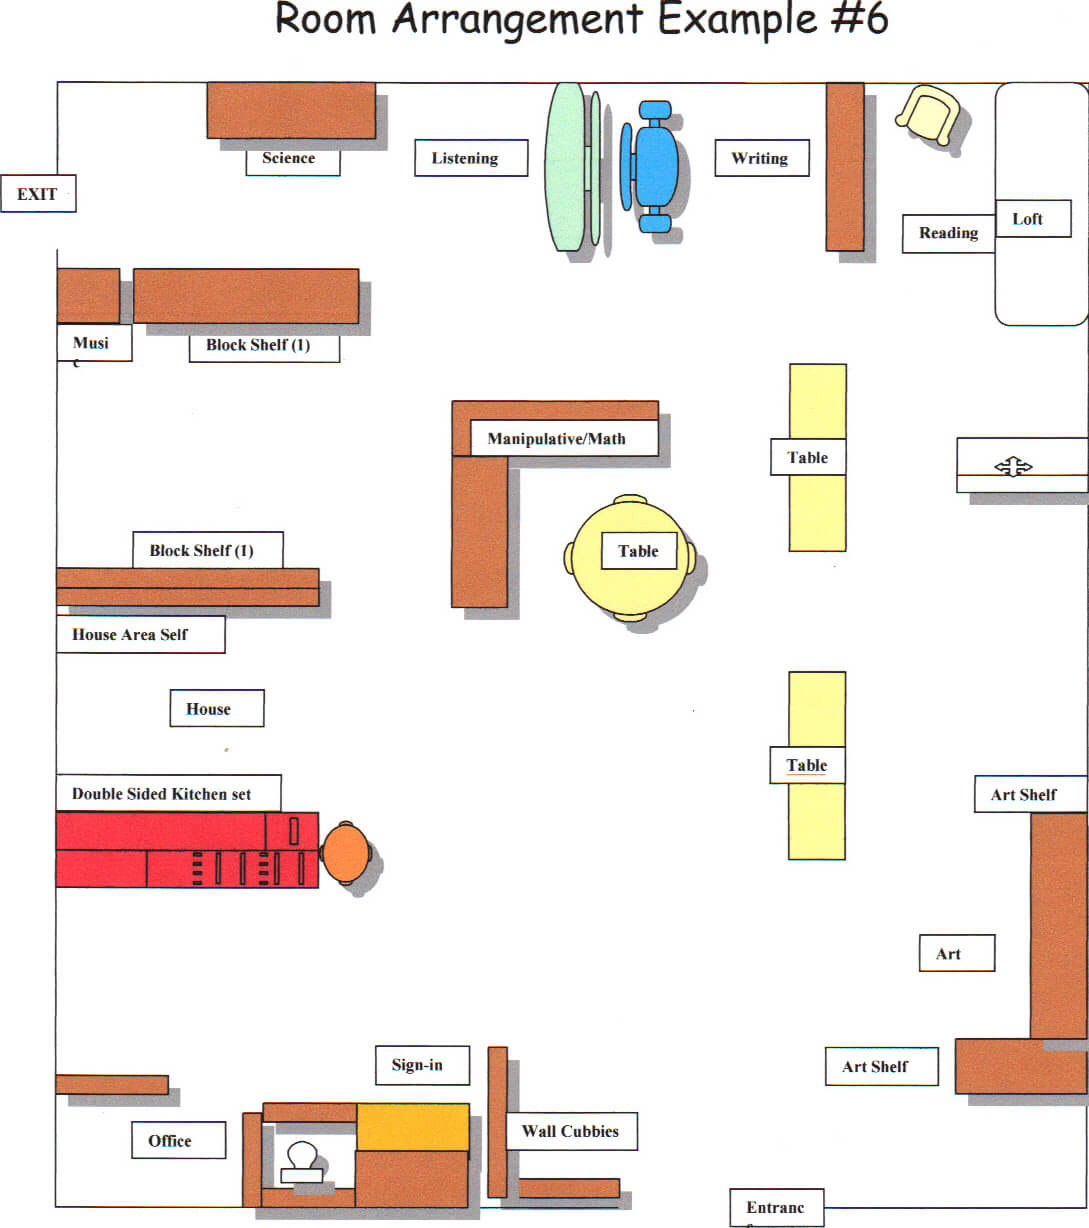 Room arrangement - Example 6